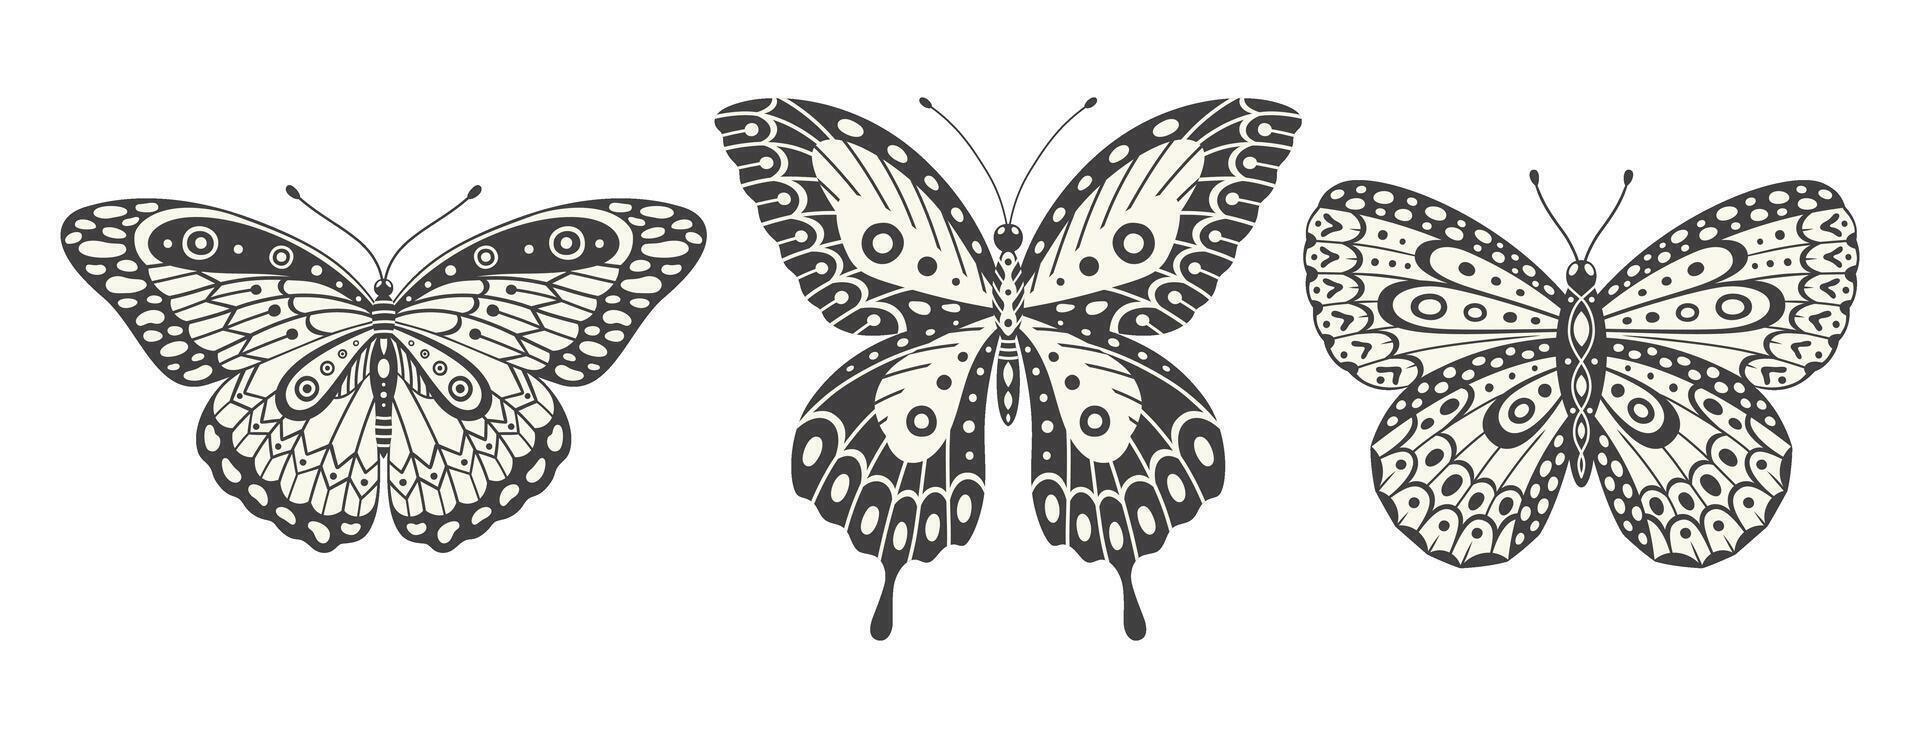 fjäril uppsättning, vektor. y2k stil estetisk, vinge former i främre se, magi symboler samling, abstrakt illustration. tre svart och vit element, tatuering grafisk skriva ut vektor